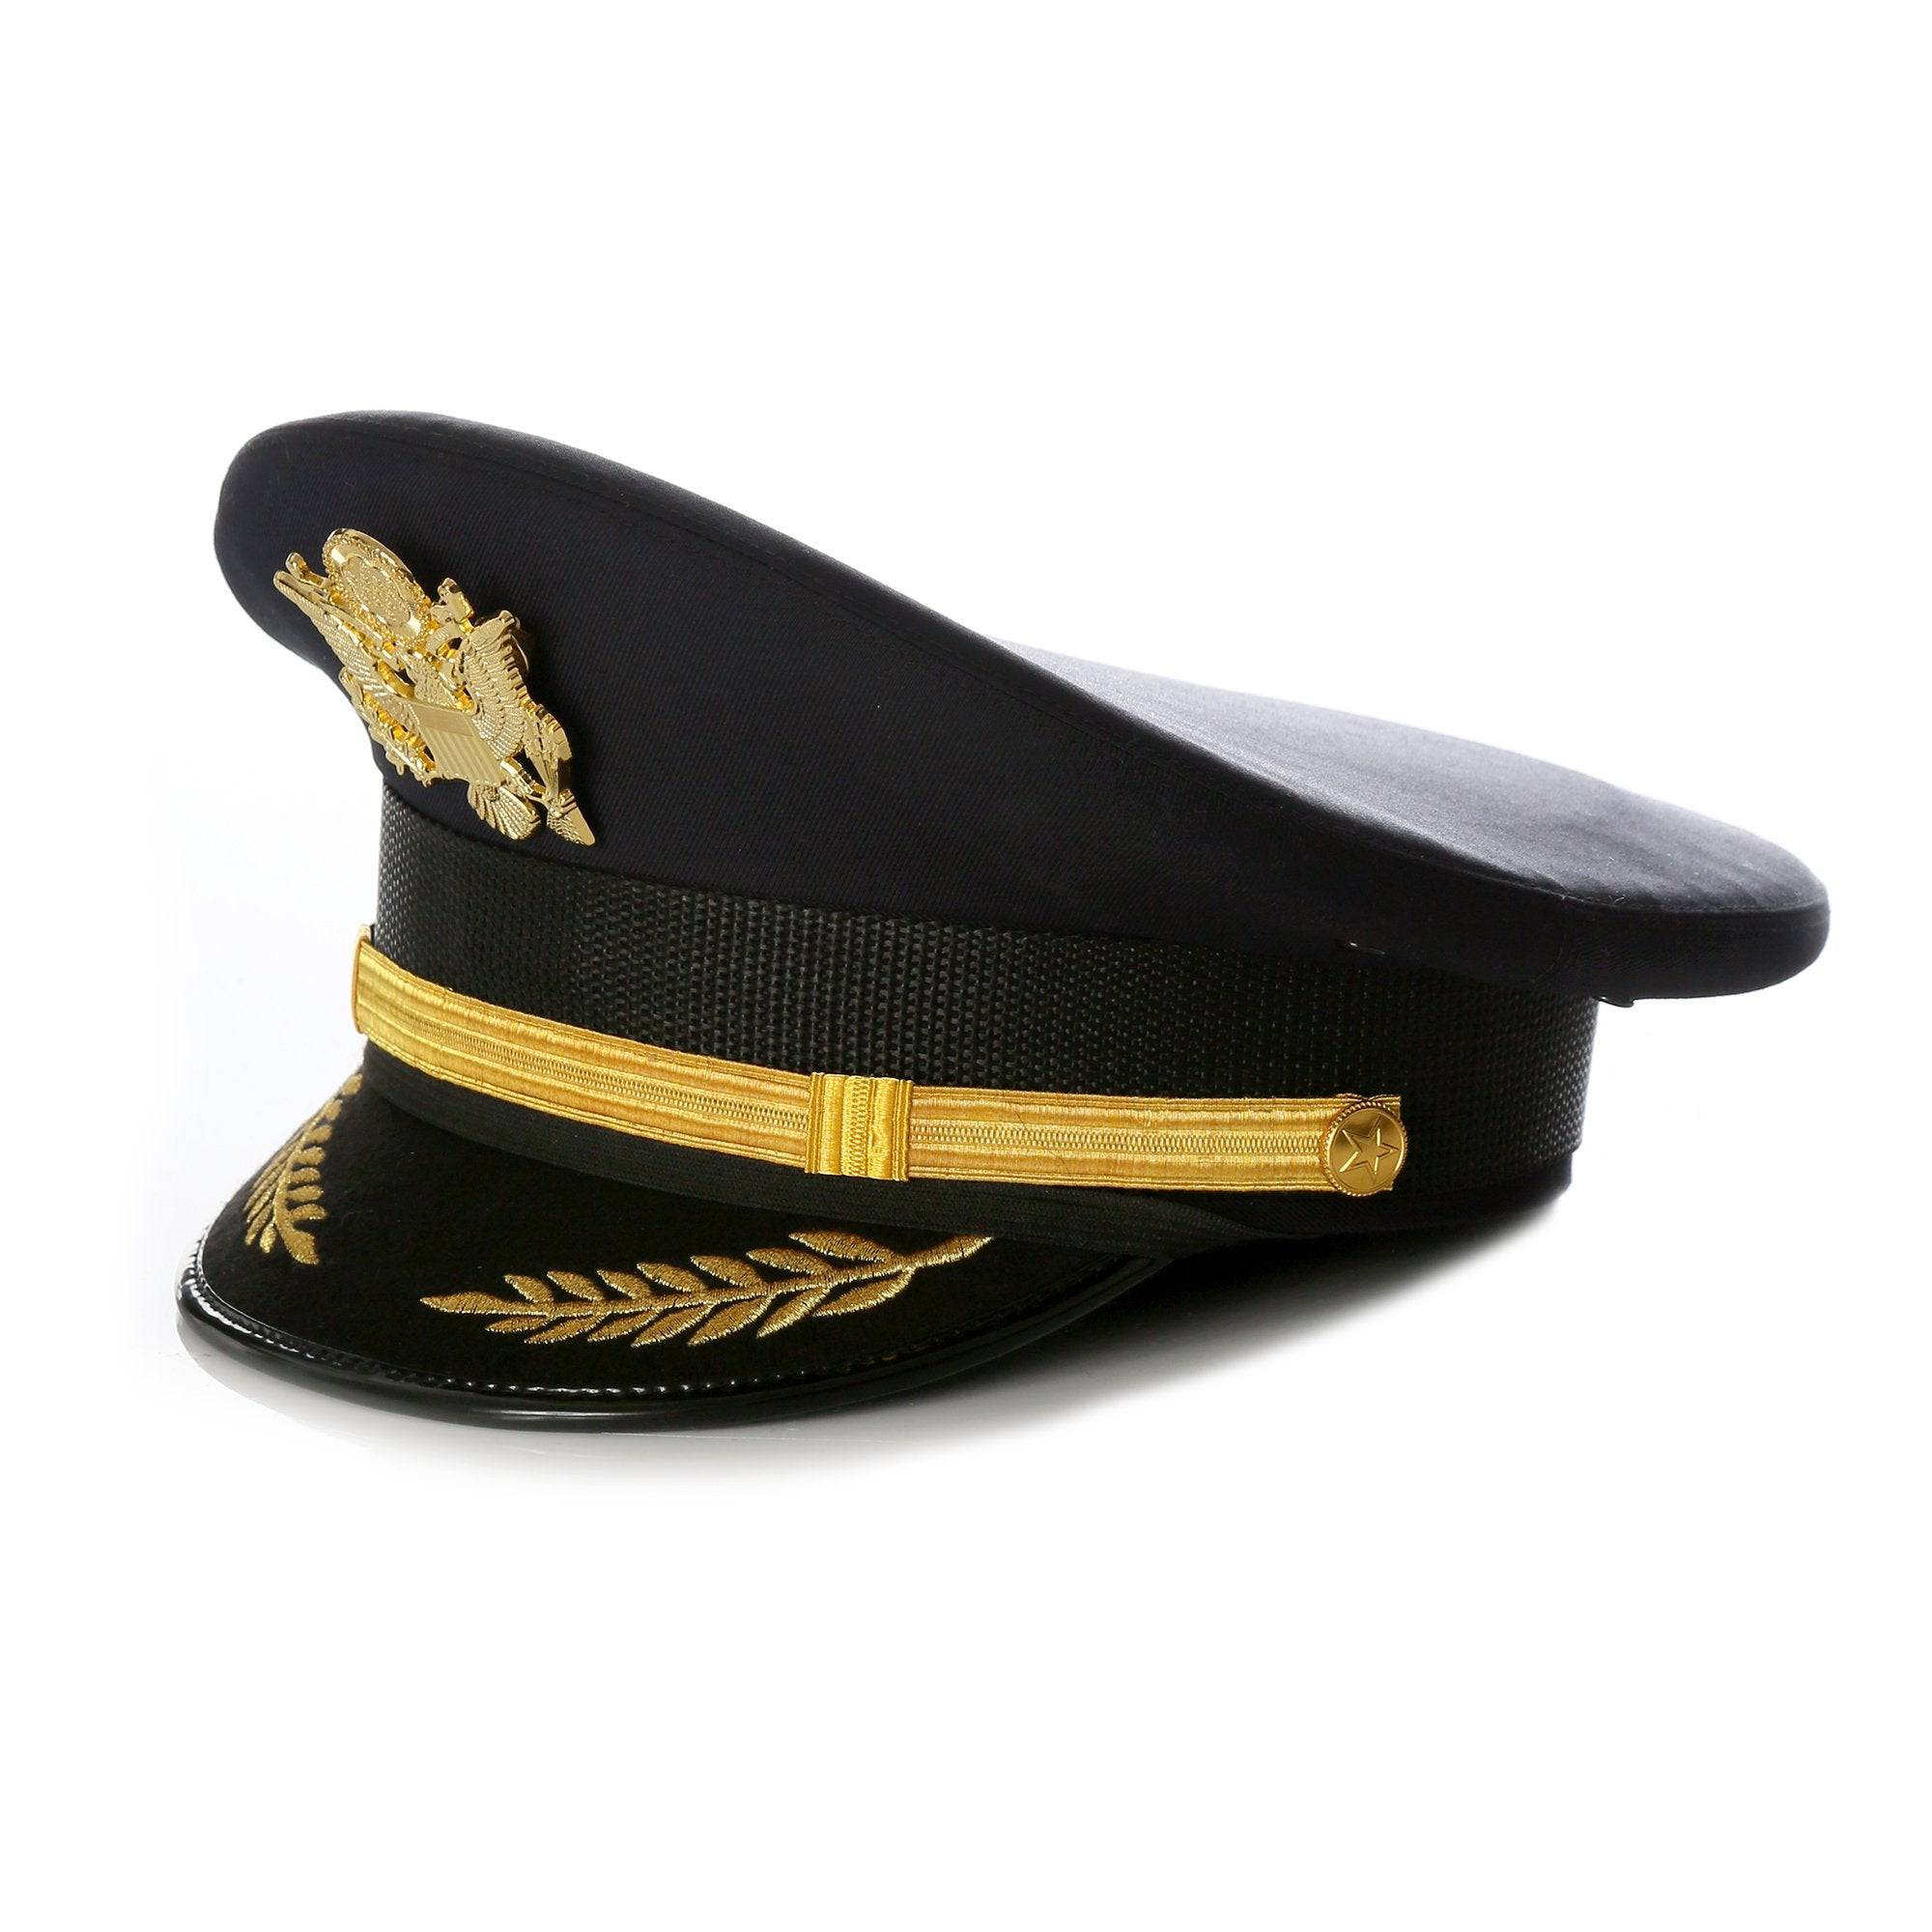 Black Military Cadet Captain Sailor Hat